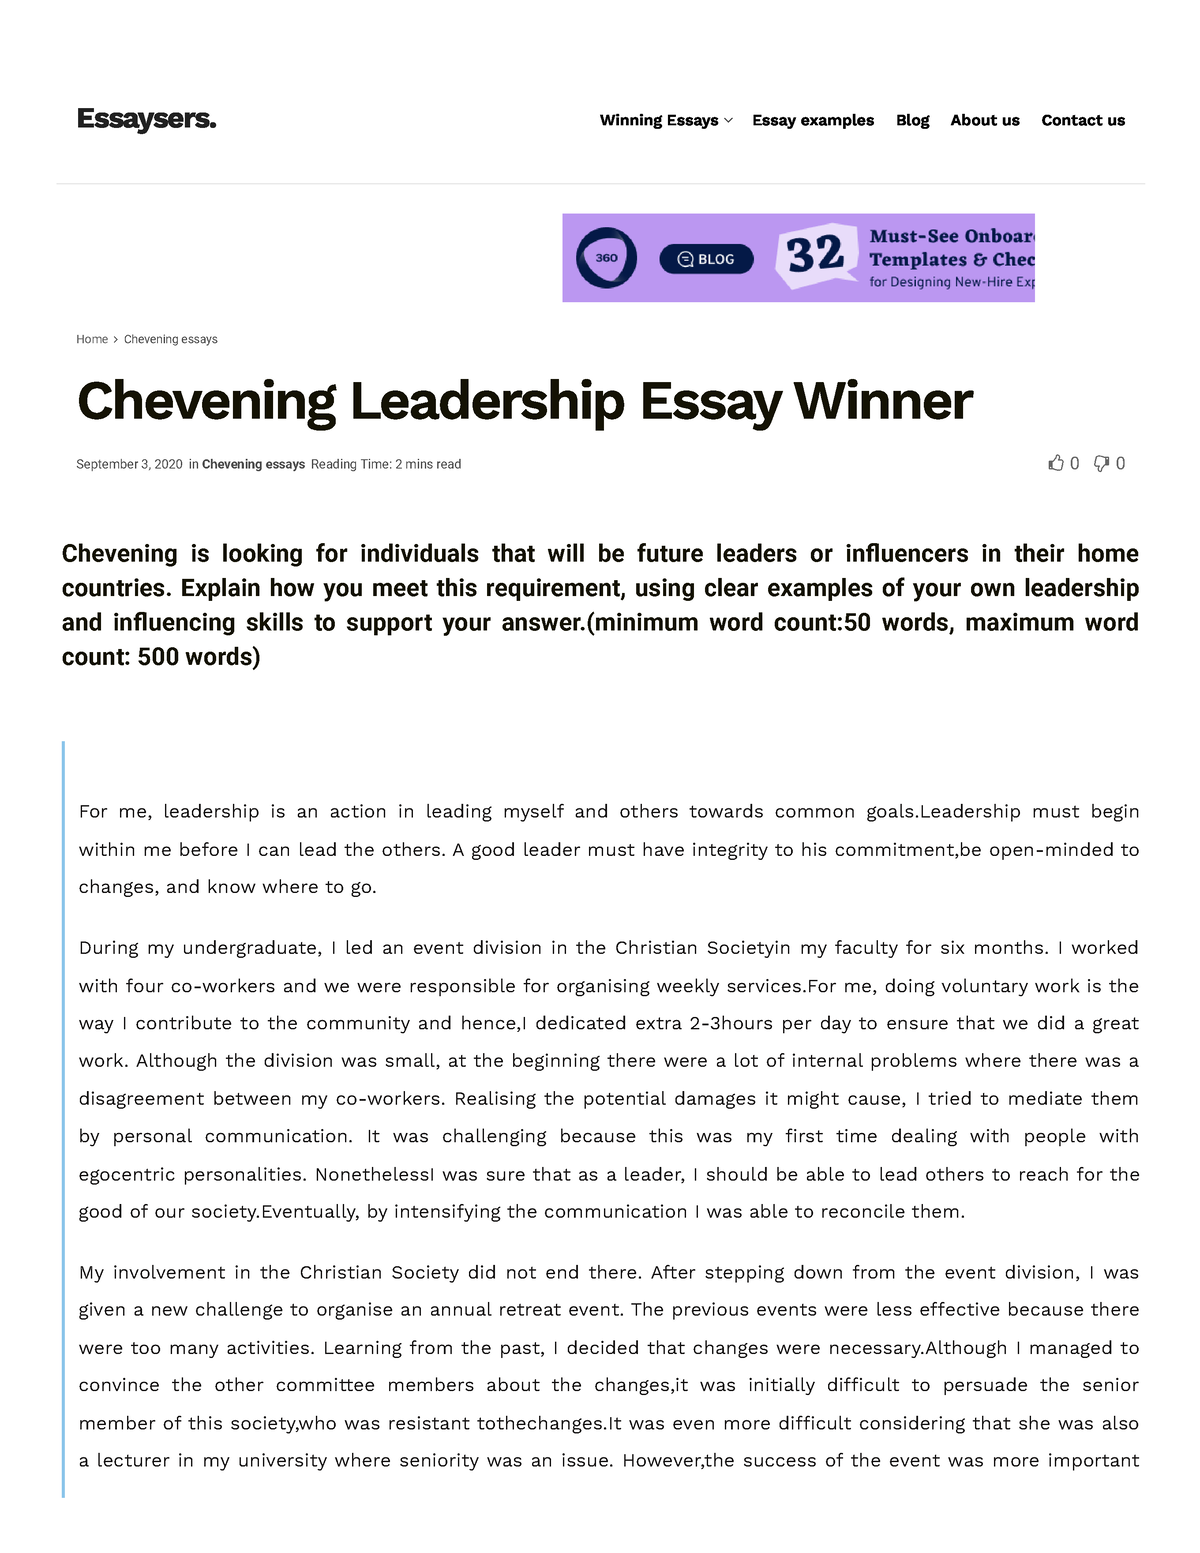 skillsusa leadership essay